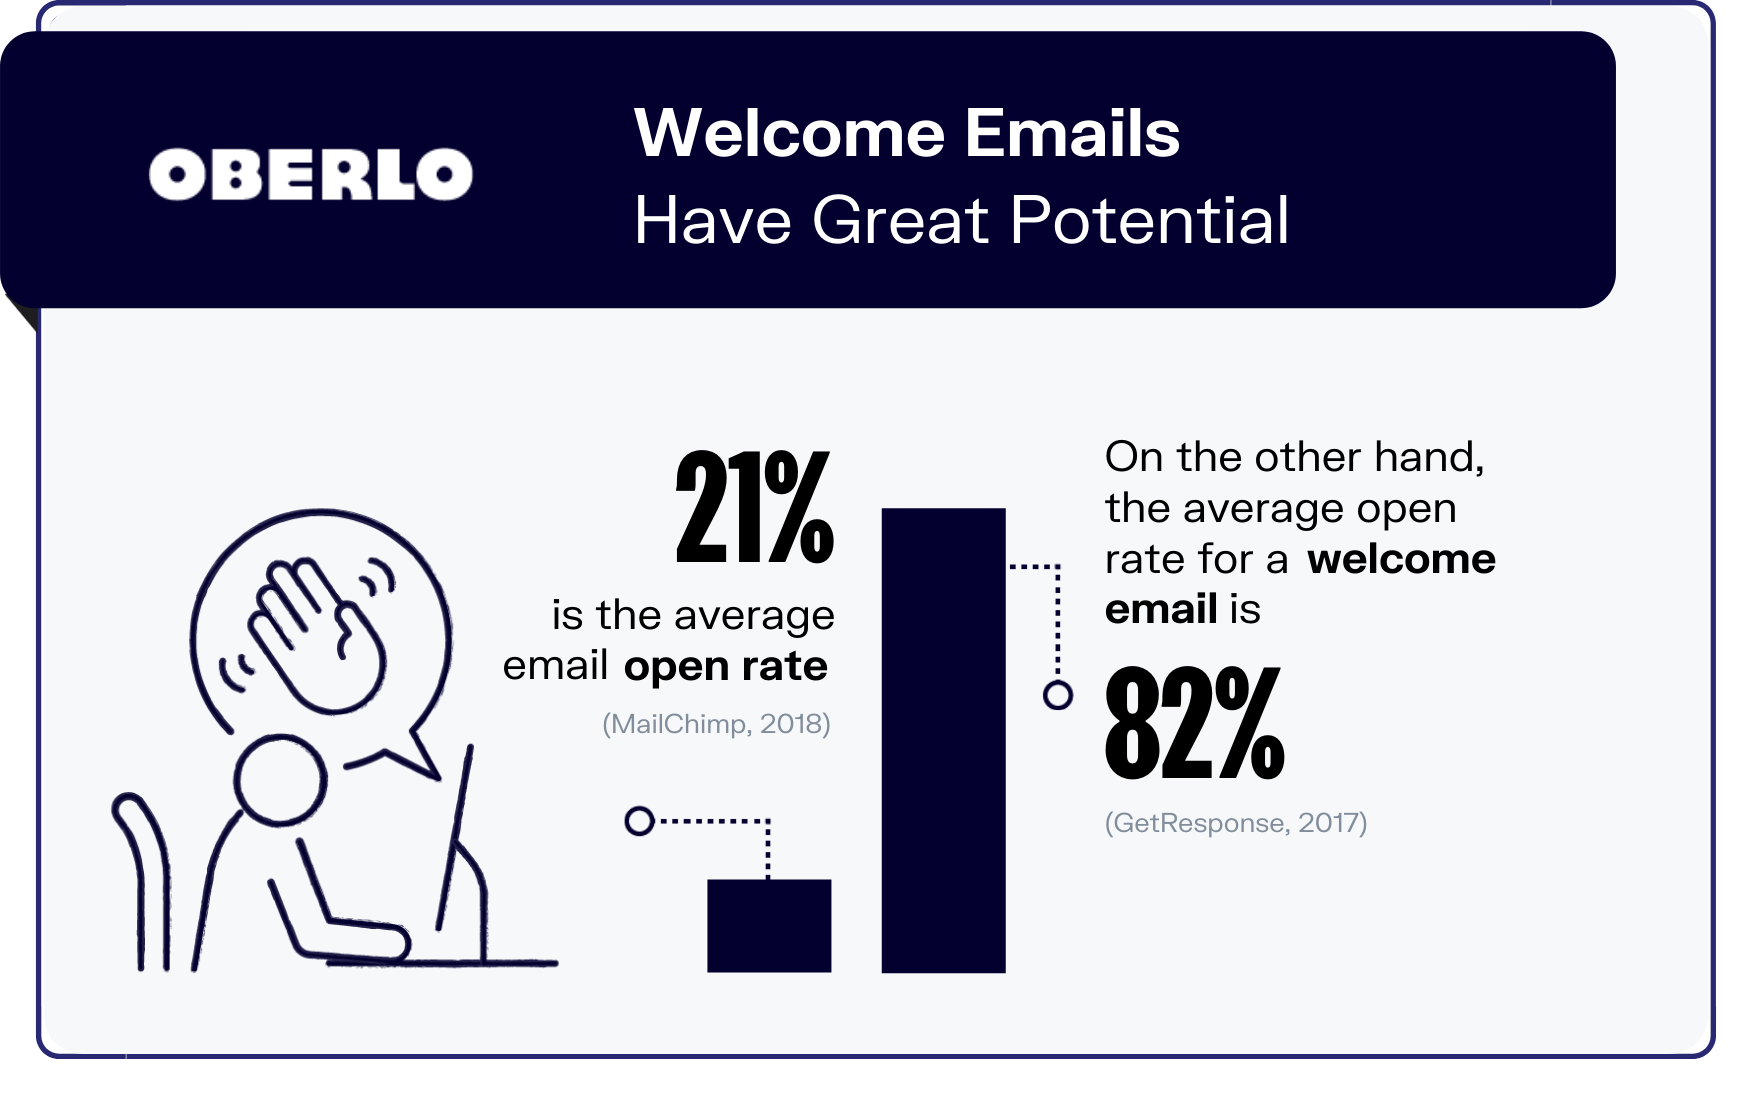 Gráfico de estadísticas de marketing por correo electrónico